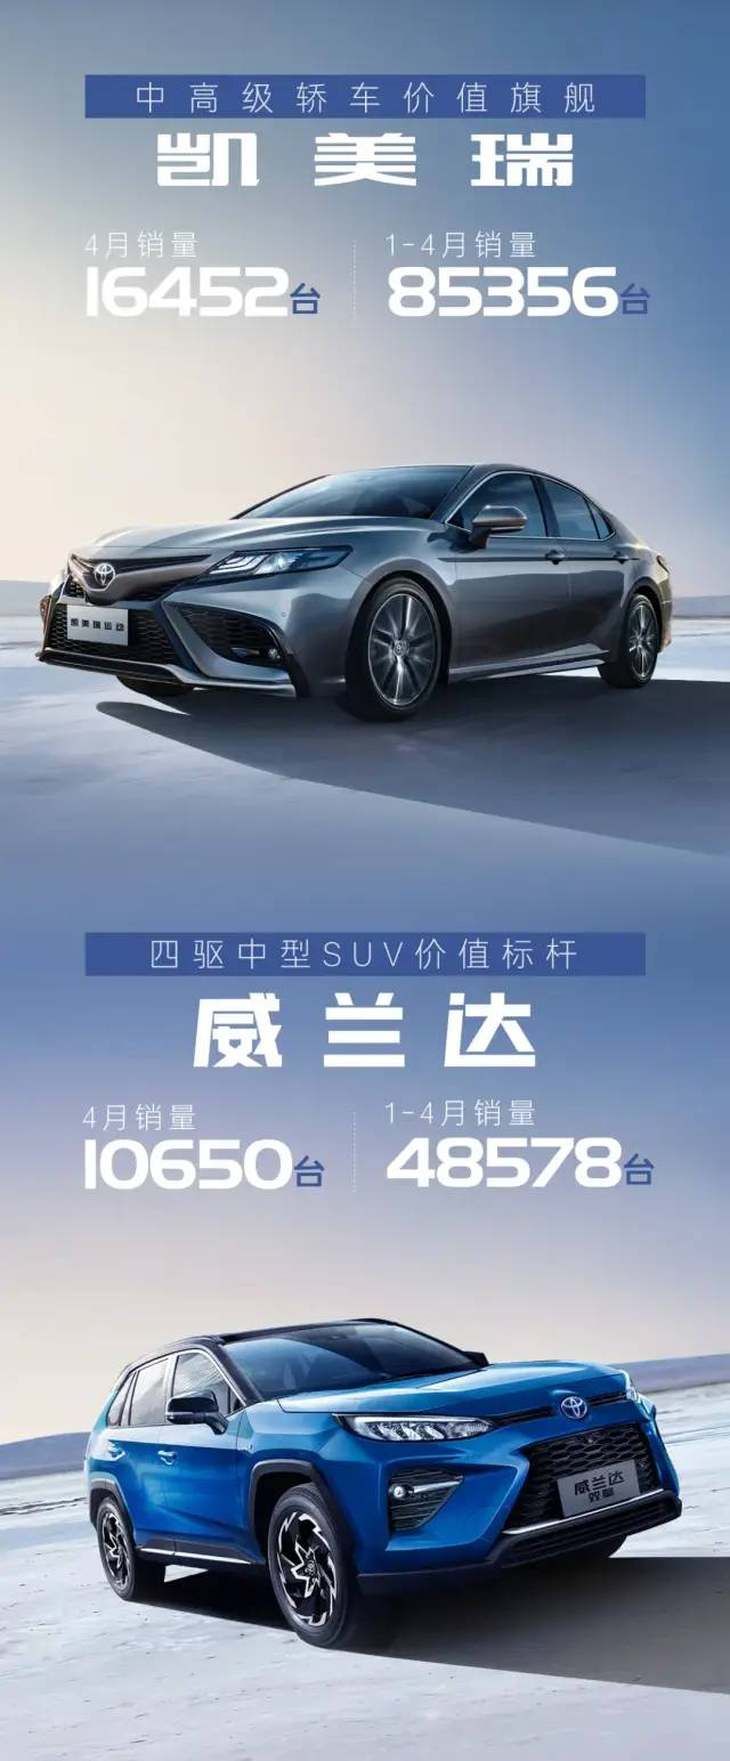 广汽丰田1-4月销量公布 达31.55万台 同比增长15.2%